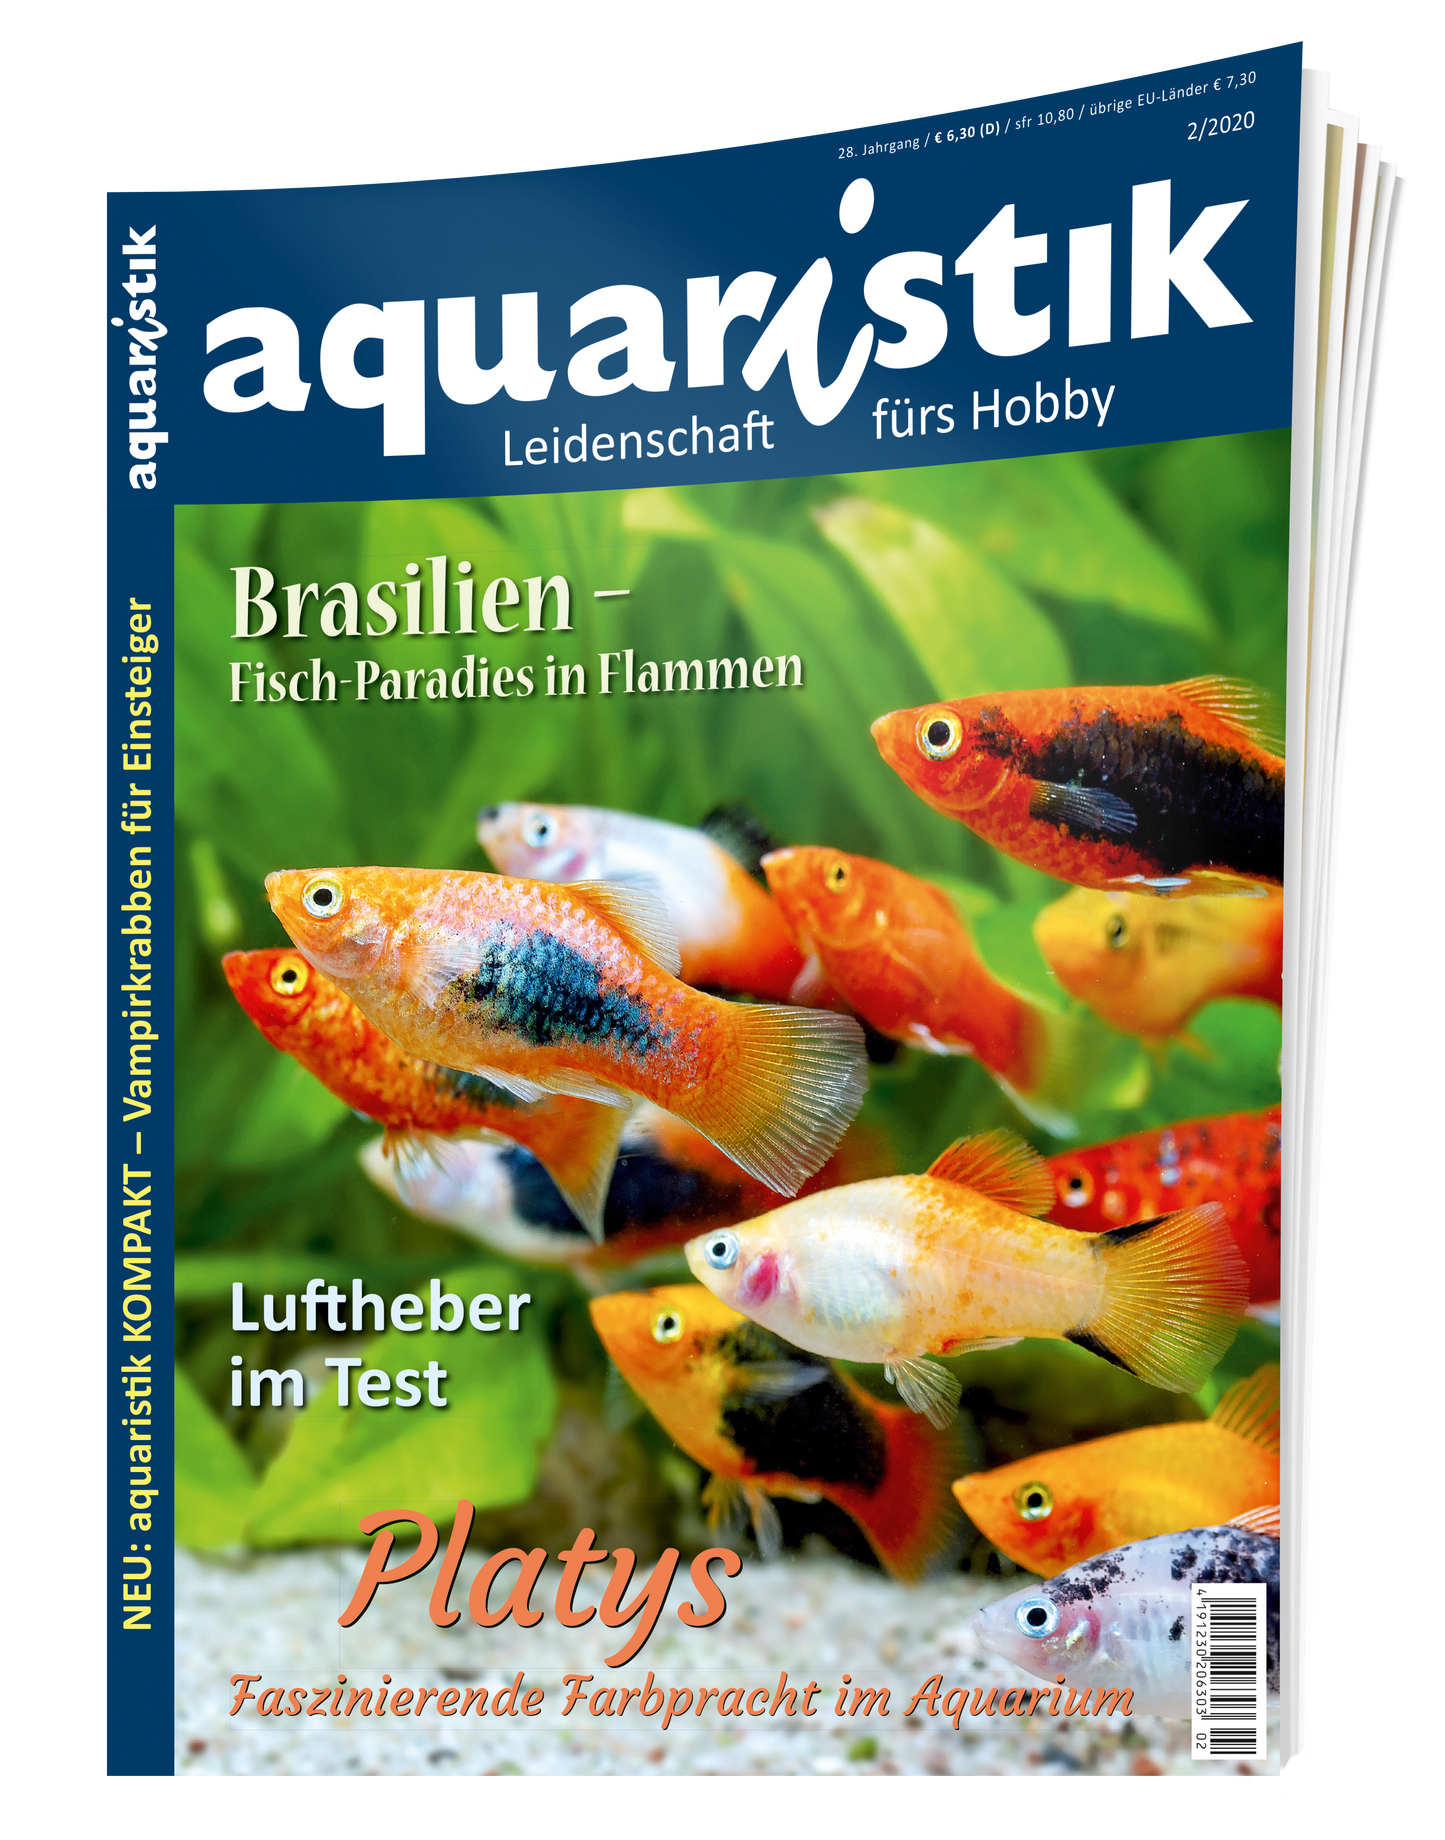 aquaristik 2/2020